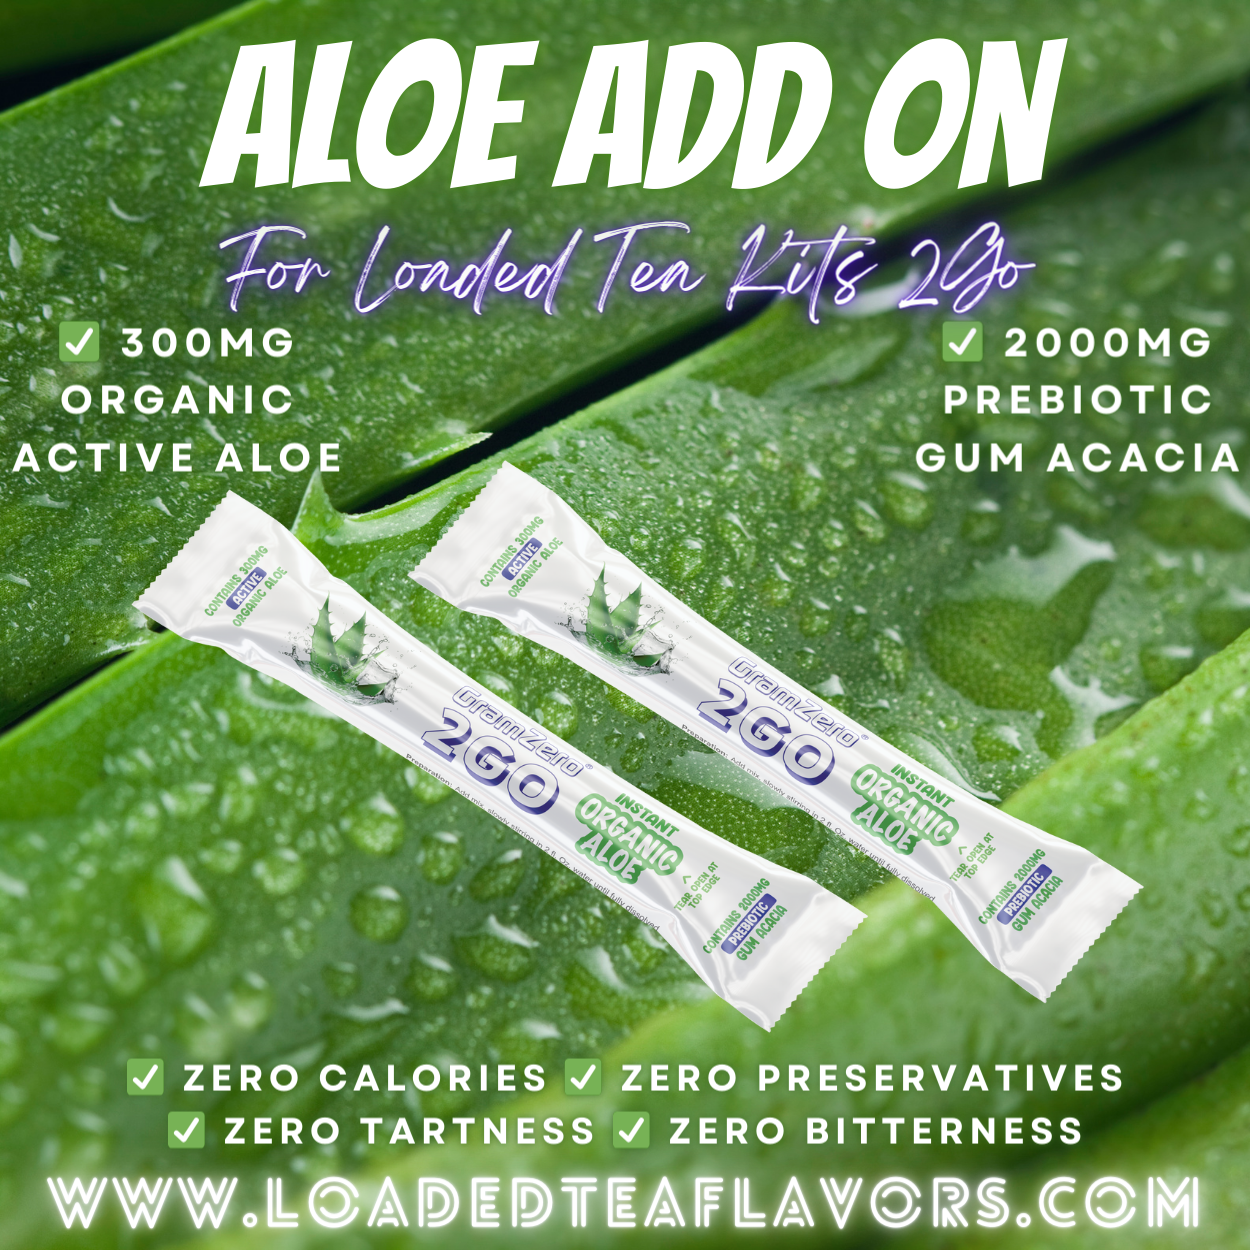 Add On: Organic Instant Aloe Vera Powder Add On for Loaded Tea Kits 2GO ~ Add-On For 2-32oz Teas